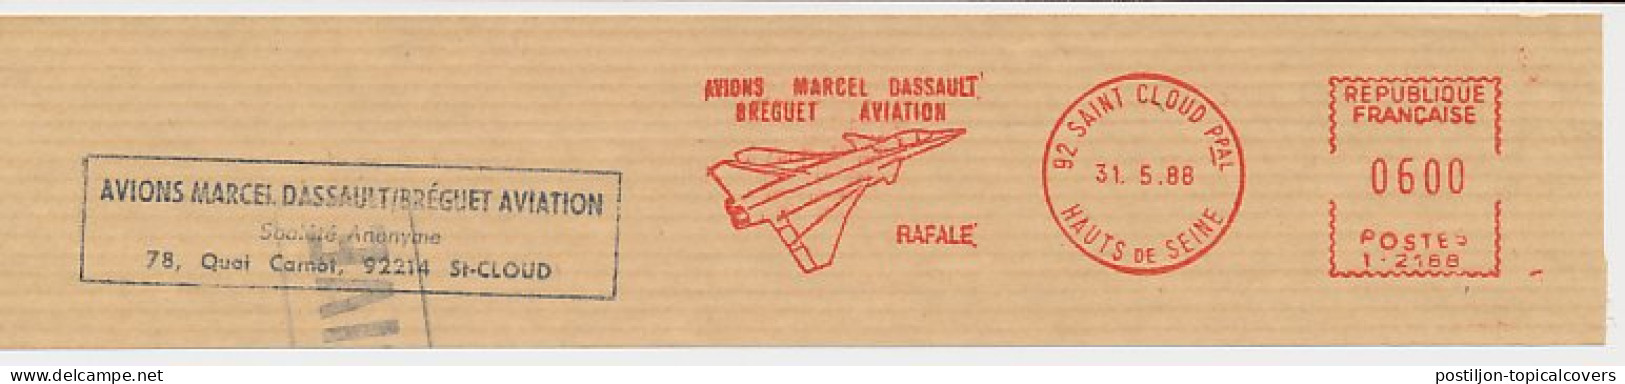 Meter Top Cut France 1988 Jet Fighter - Rafale - Marcel - Dassault - Breguet - I 2188 - Militaria